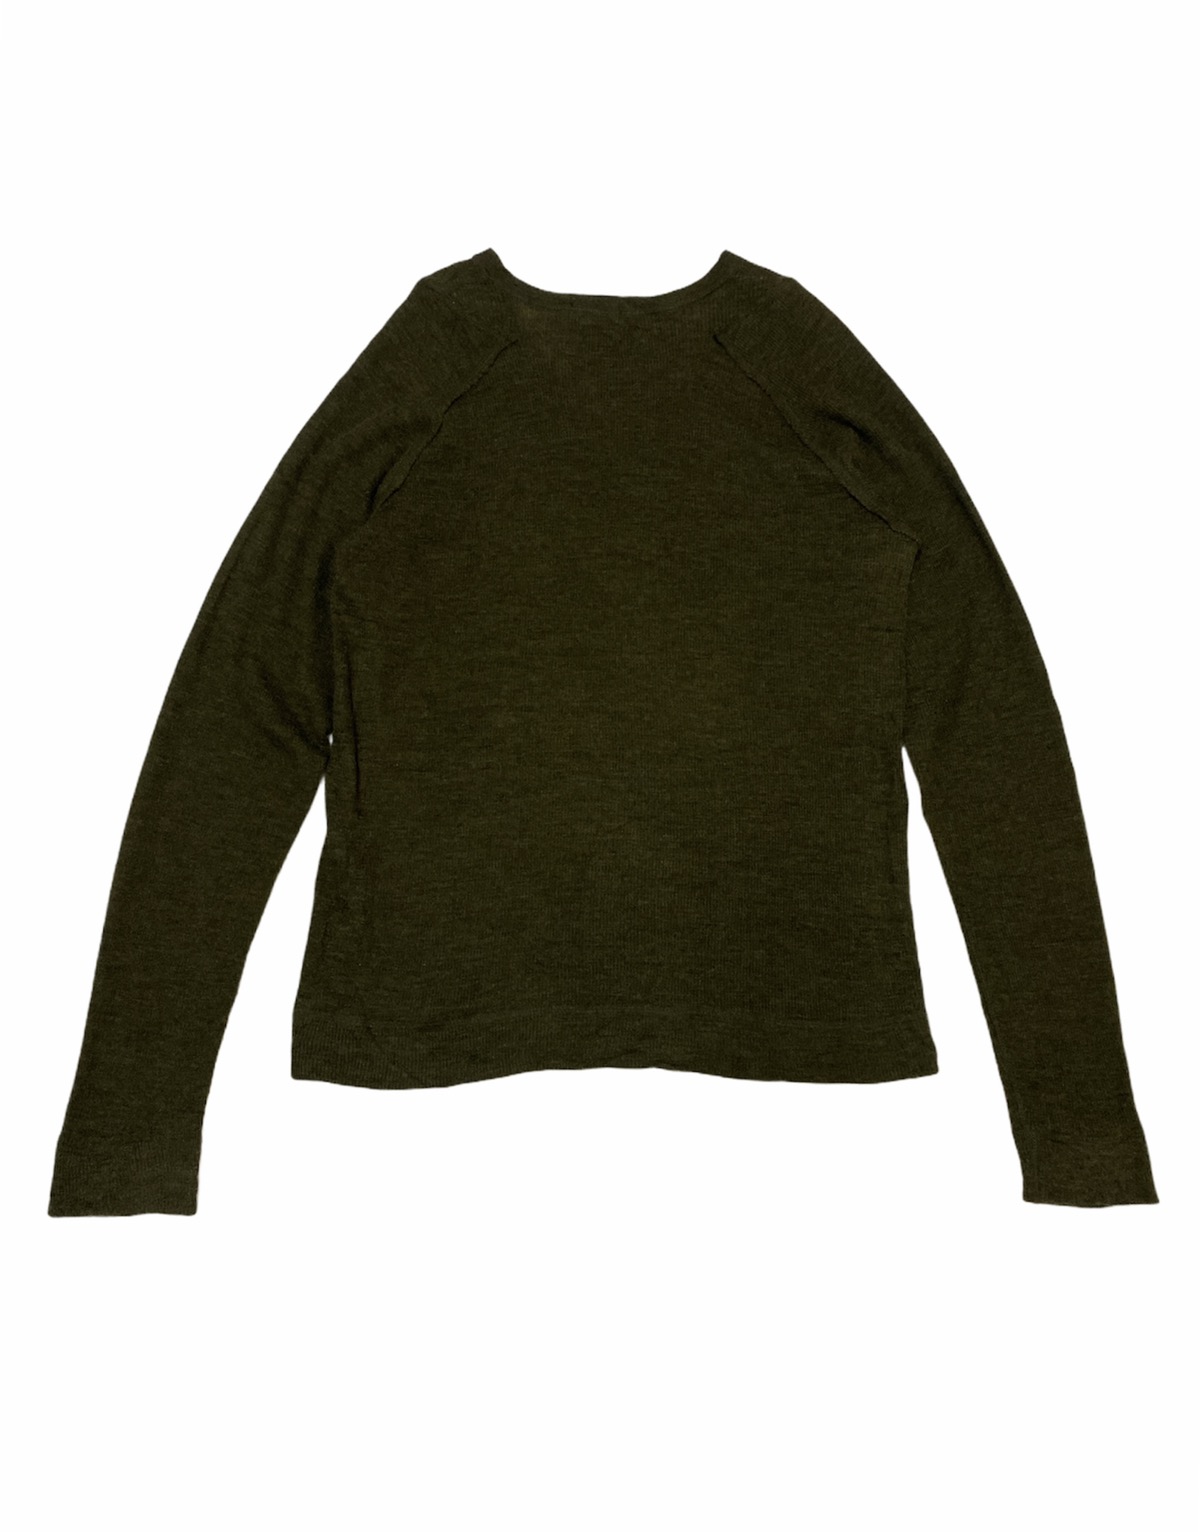 Cabane De Zucca - Japanese Brand Cabane De Zucca Dark Green Knit Sweater - 2